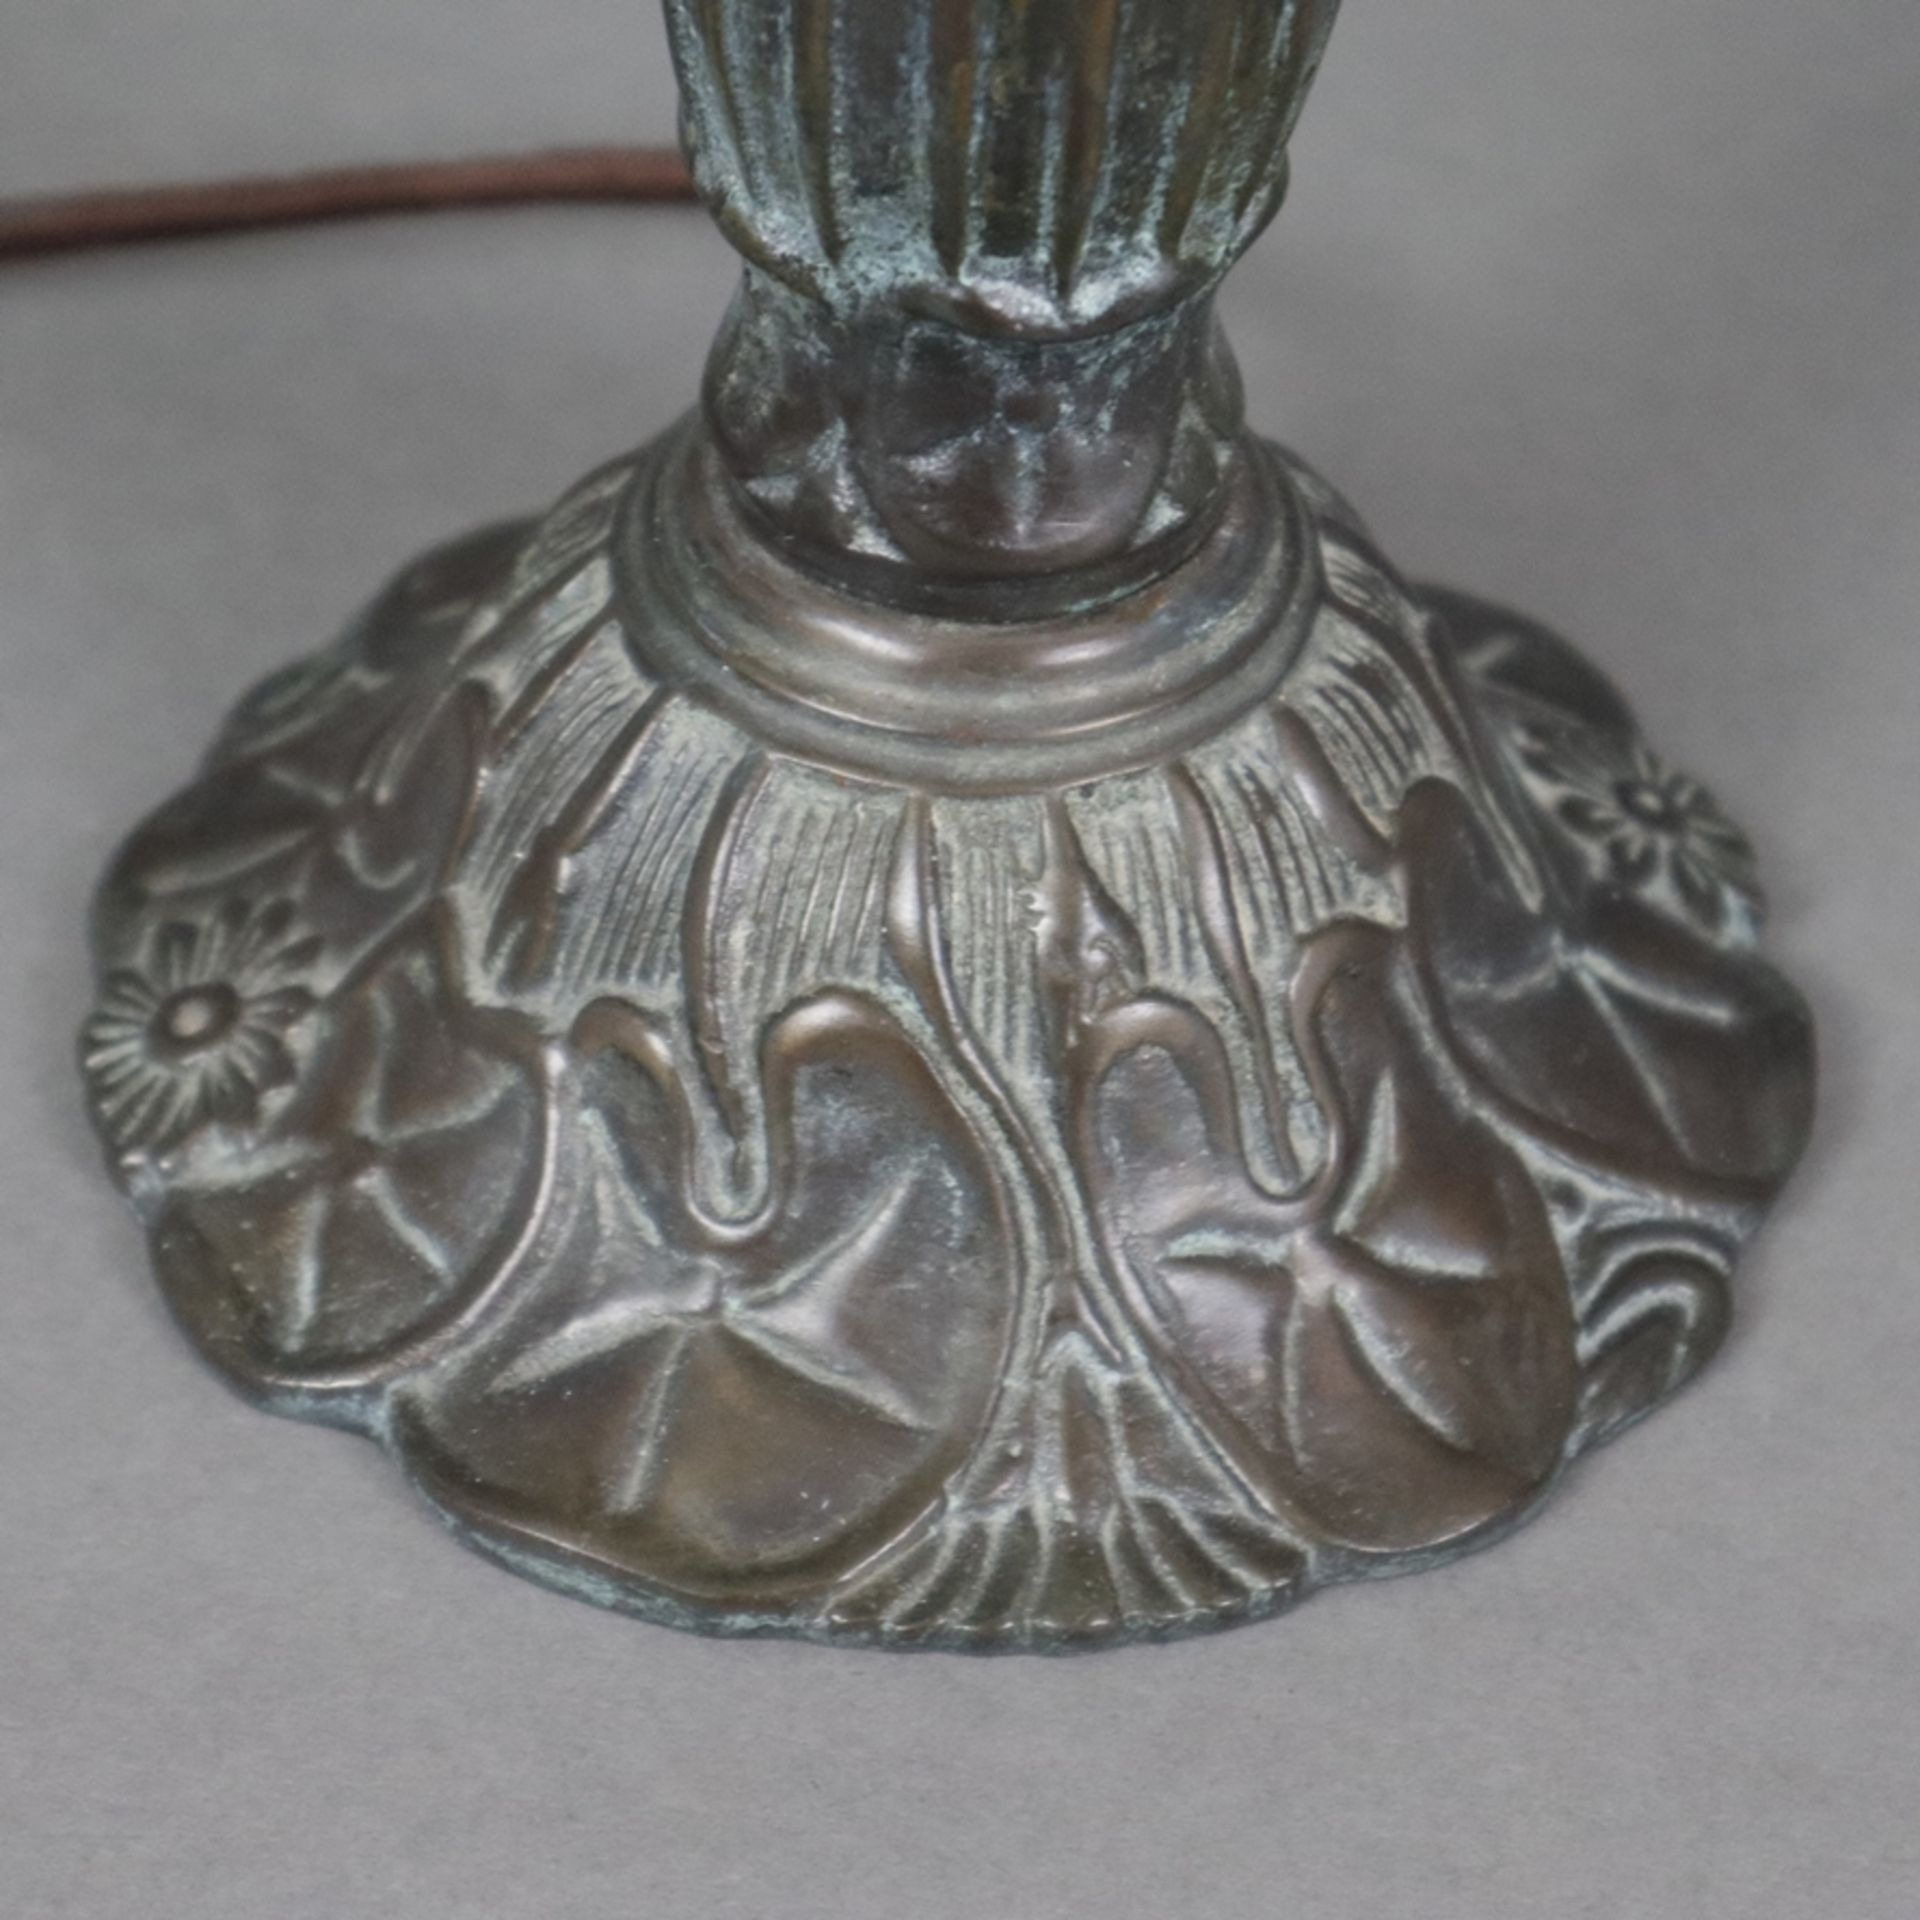 Jugendstil Tischlampe - um 1900/10, floral reliefierter Metallfuß, bronziert, glockenförmiger Glass - Bild 5 aus 7